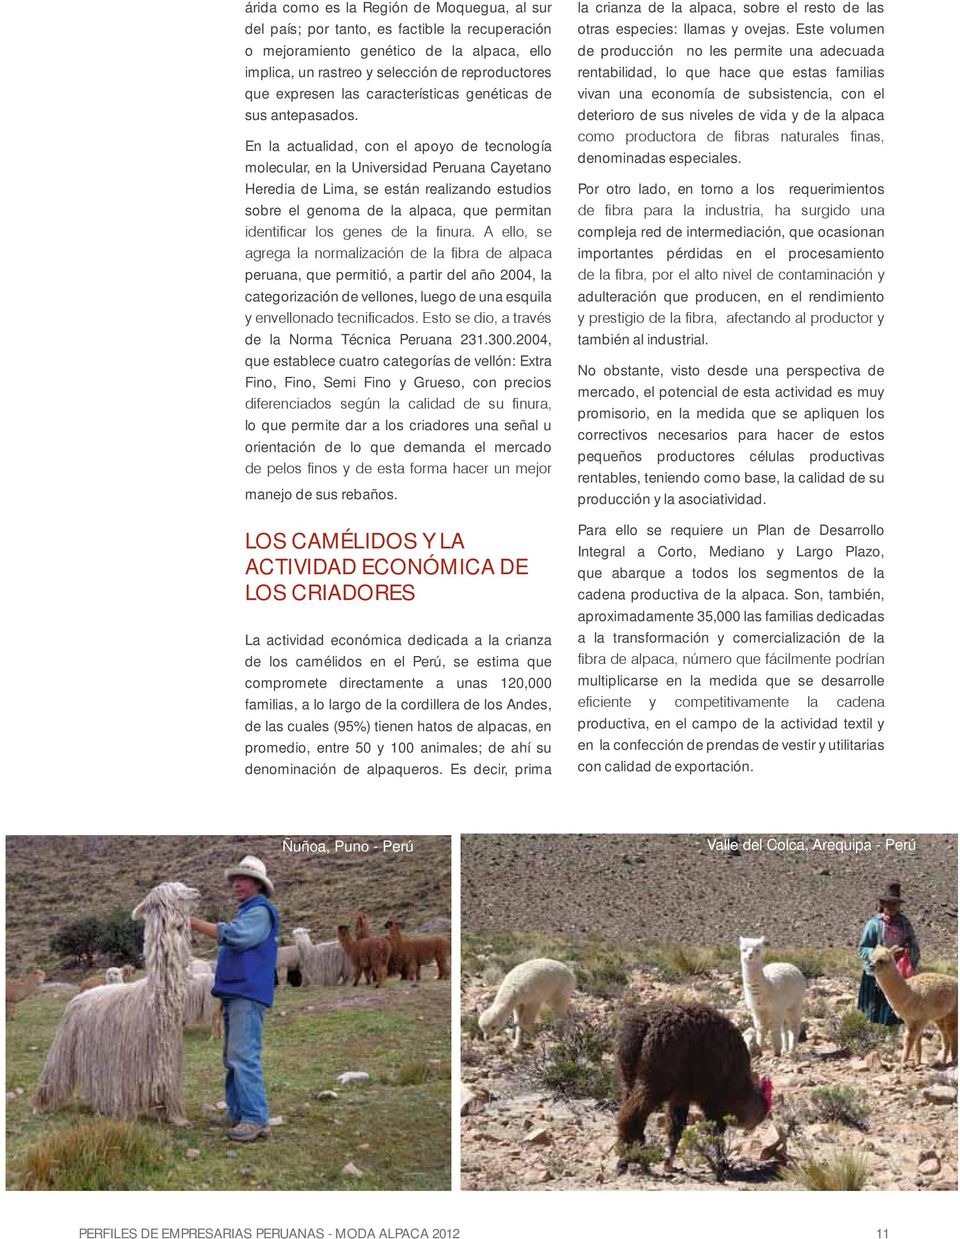 En la actualidad, con el apoyo de tecnología molecular, en la Universidad Peruana Cayetano Heredia de Lima, se están realizando estudios sobre el genoma de la alpaca, que permitan peruana, que